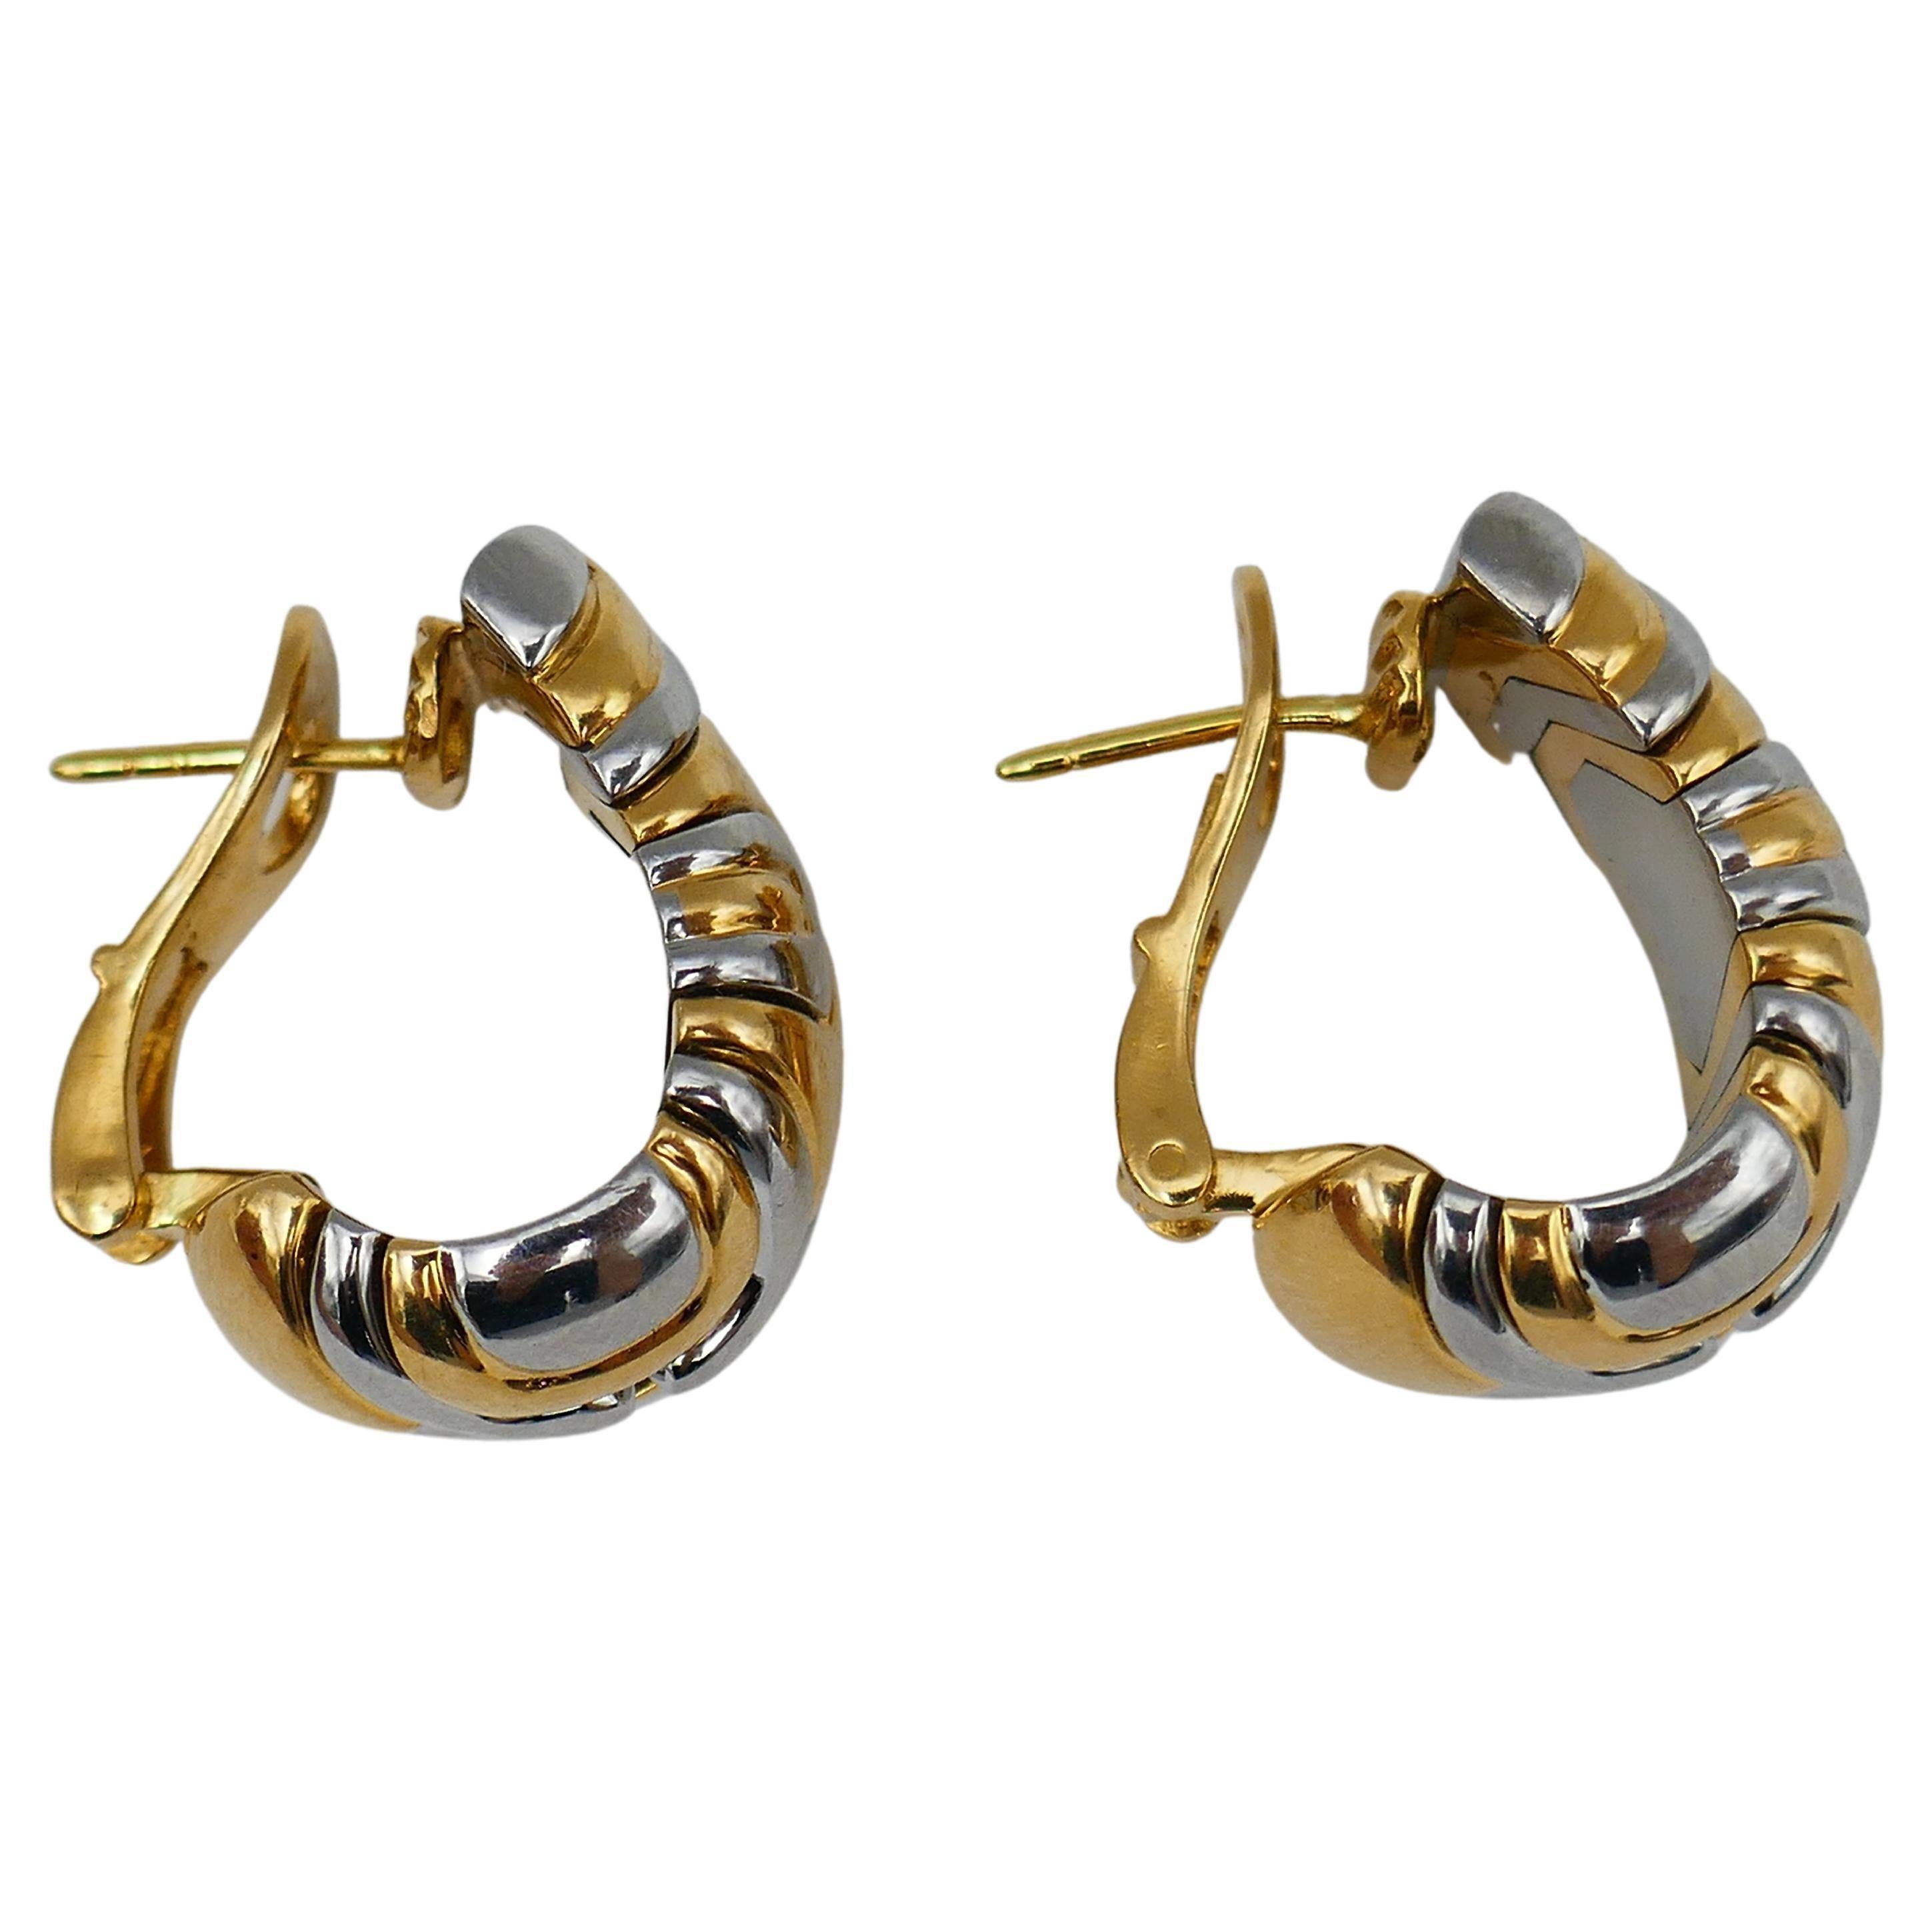 Ein Paar Bulgari Alveare Huggie-Ohrringe aus 18 Karat Gold und Edelstahl. Gestempelt mit Bulgari-Herstellermarken, einer Punze für 18-karätiges Gold, dem Herstellungsjahr (1988) und einer Seriennummer.
Abmessungen: 7/8